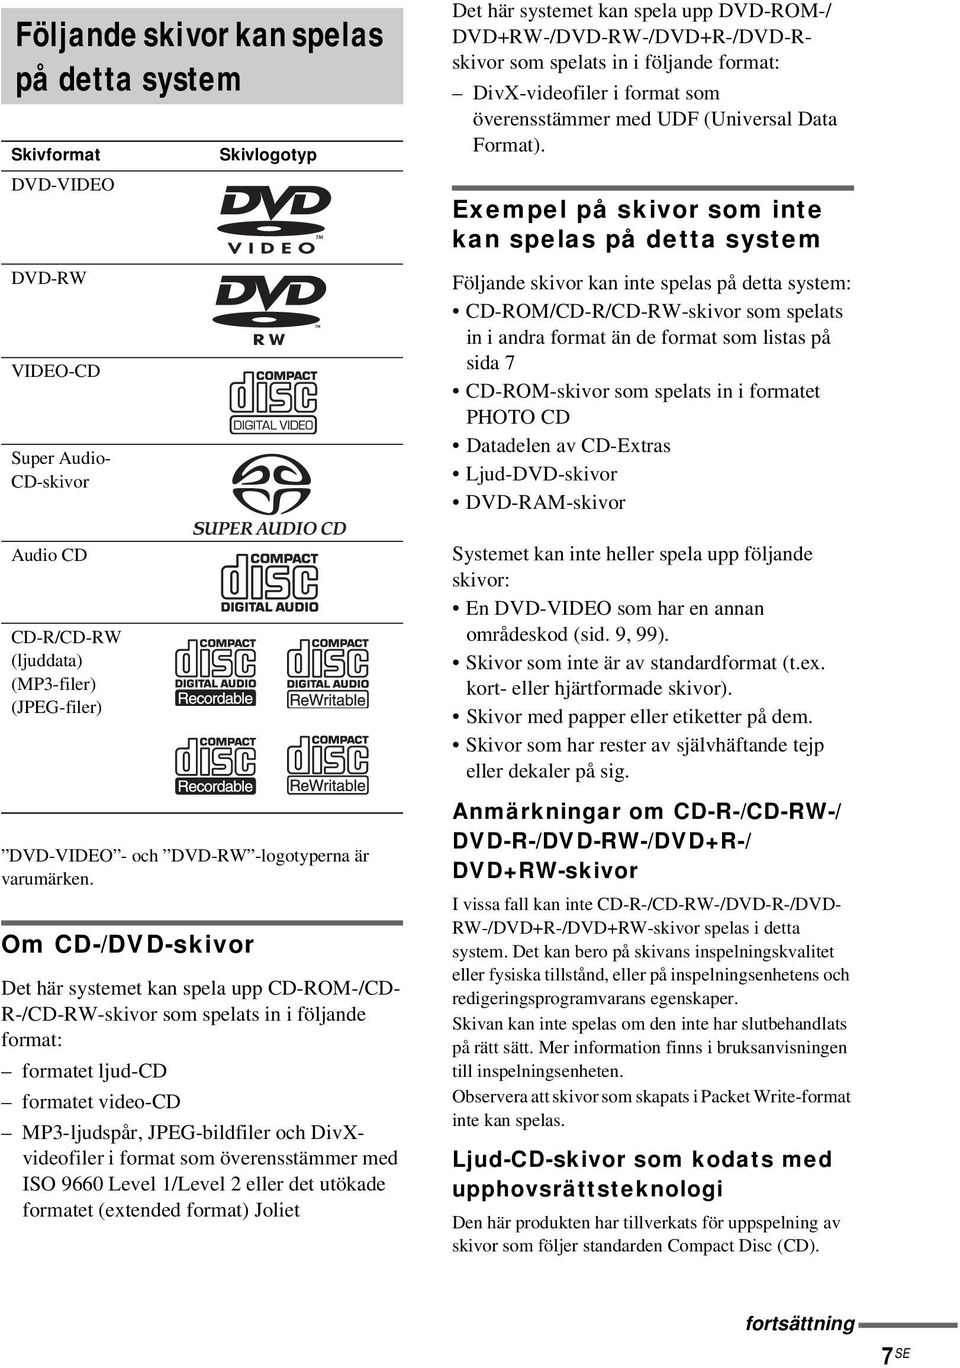 Om CD-/DVD-skivor Skivlogotyp Det här systemet kan spela upp CD-ROM-/CD- R-/CD-RW-skivor som spelats in i följande format: formatet ljud-cd formatet video-cd MP3-ljudspår, JPEG-bildfiler och